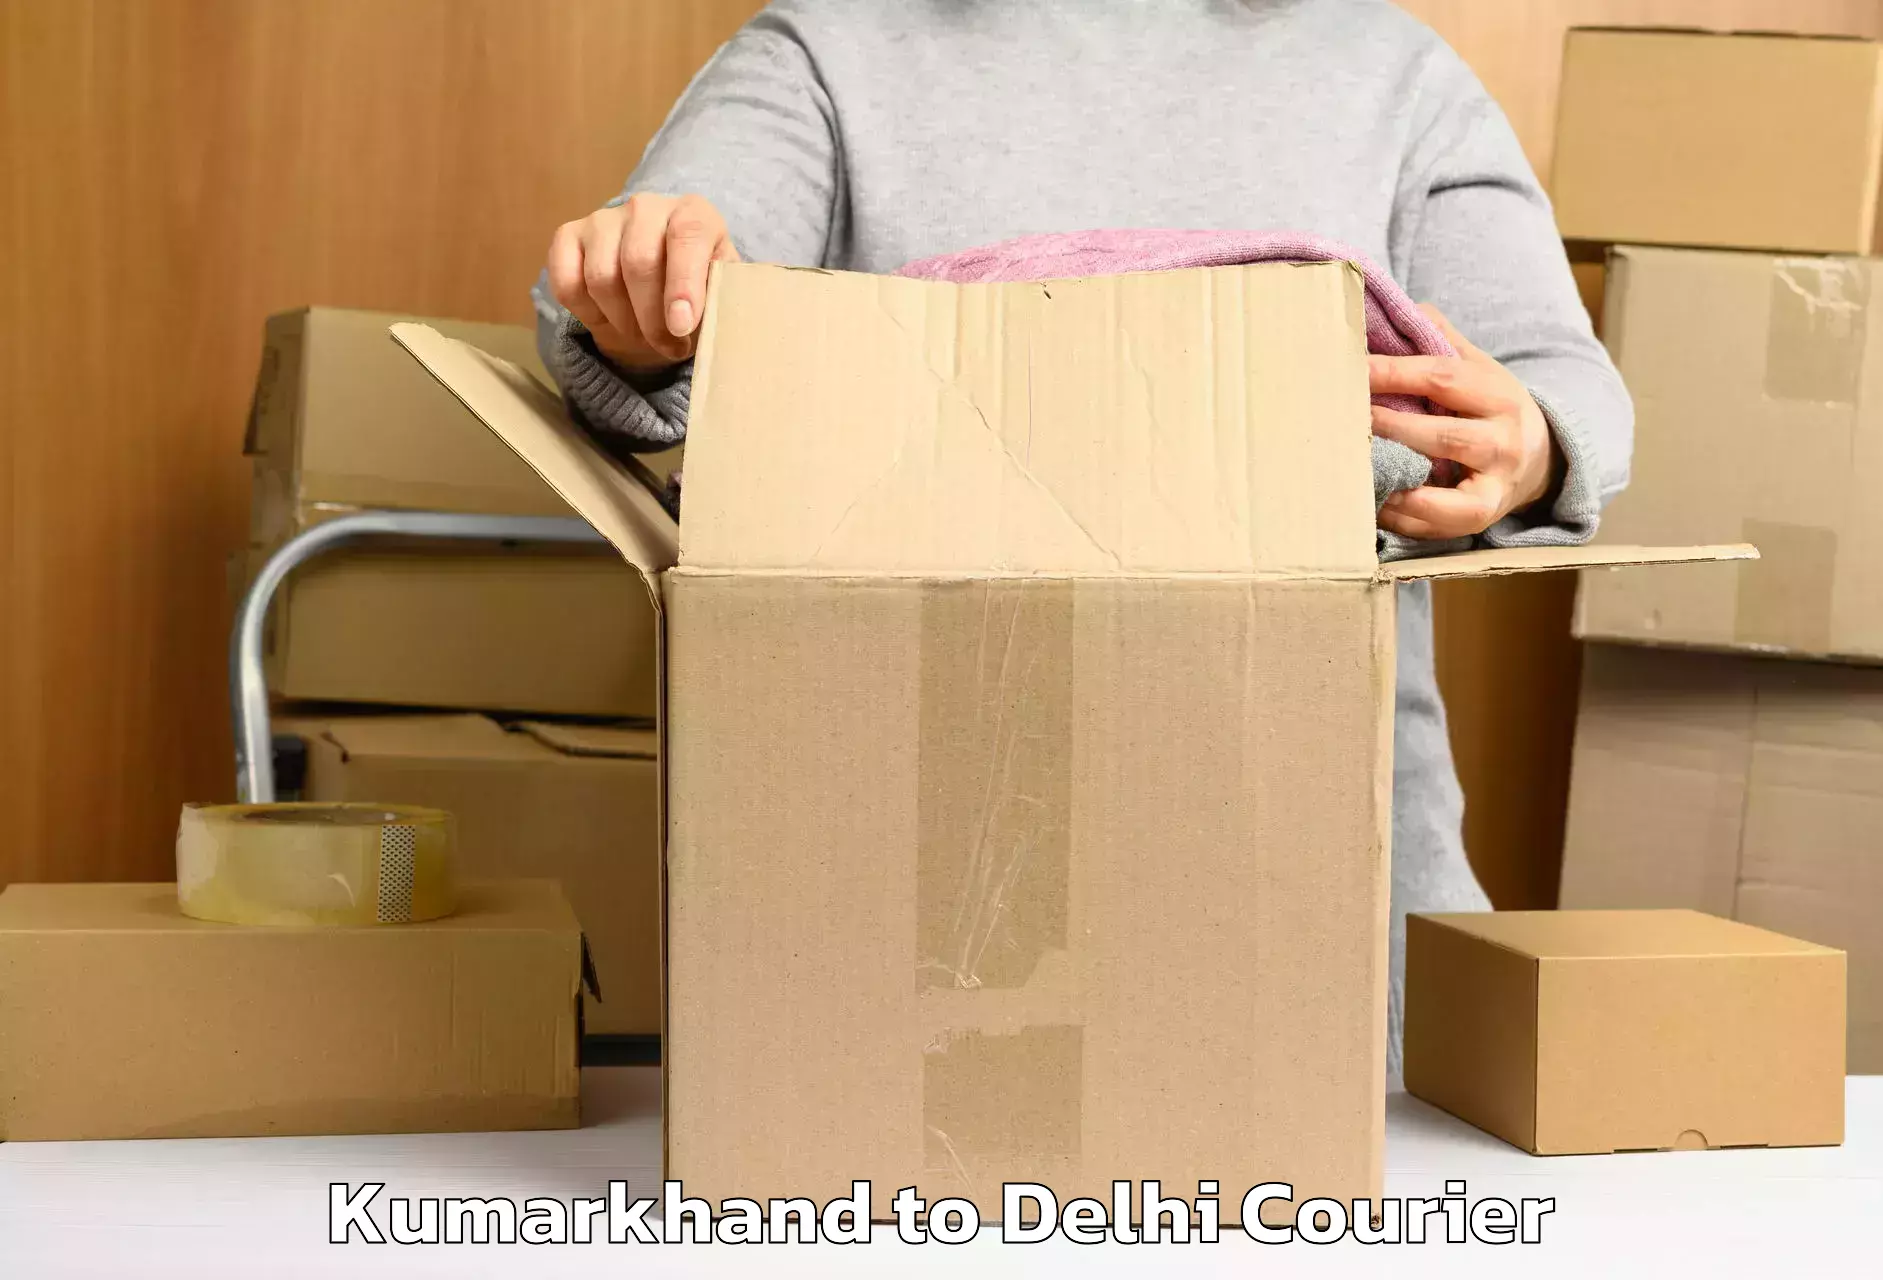 Luggage shipping estimate Kumarkhand to Kalkaji